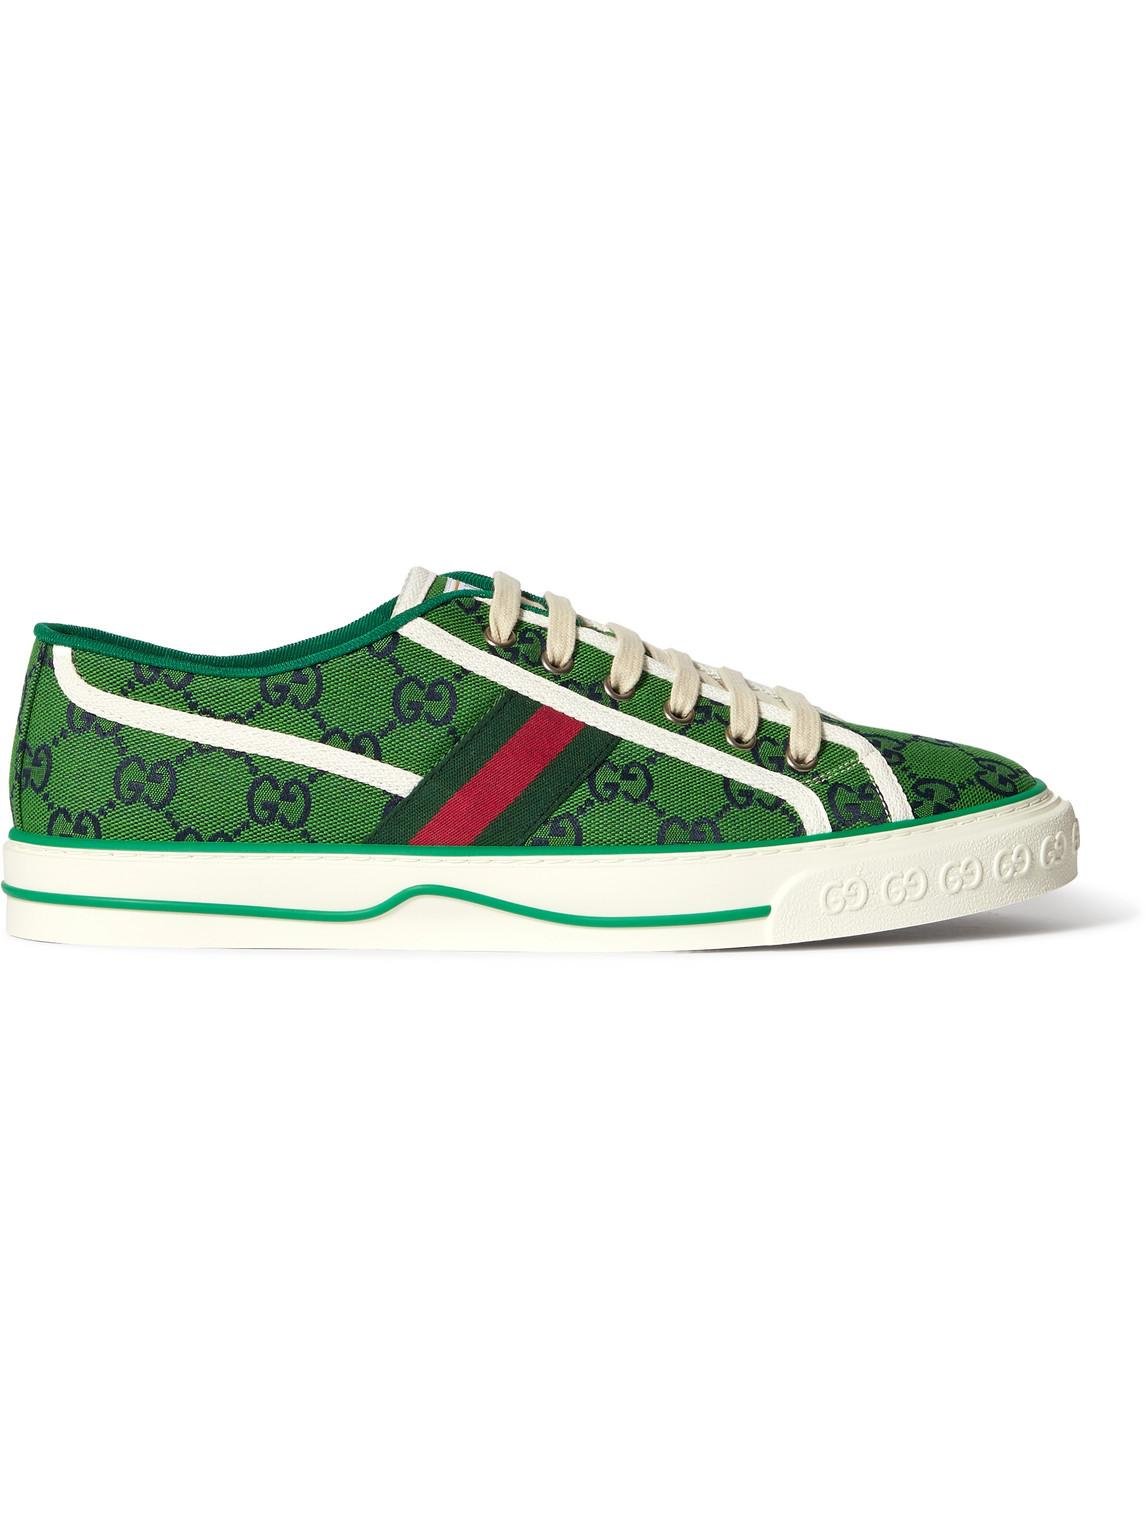 Gucci bee green brown air jordan 13 sneaker shoes | Sneakers fashion,  Jordan 13 shoes, Jordan shoes retro